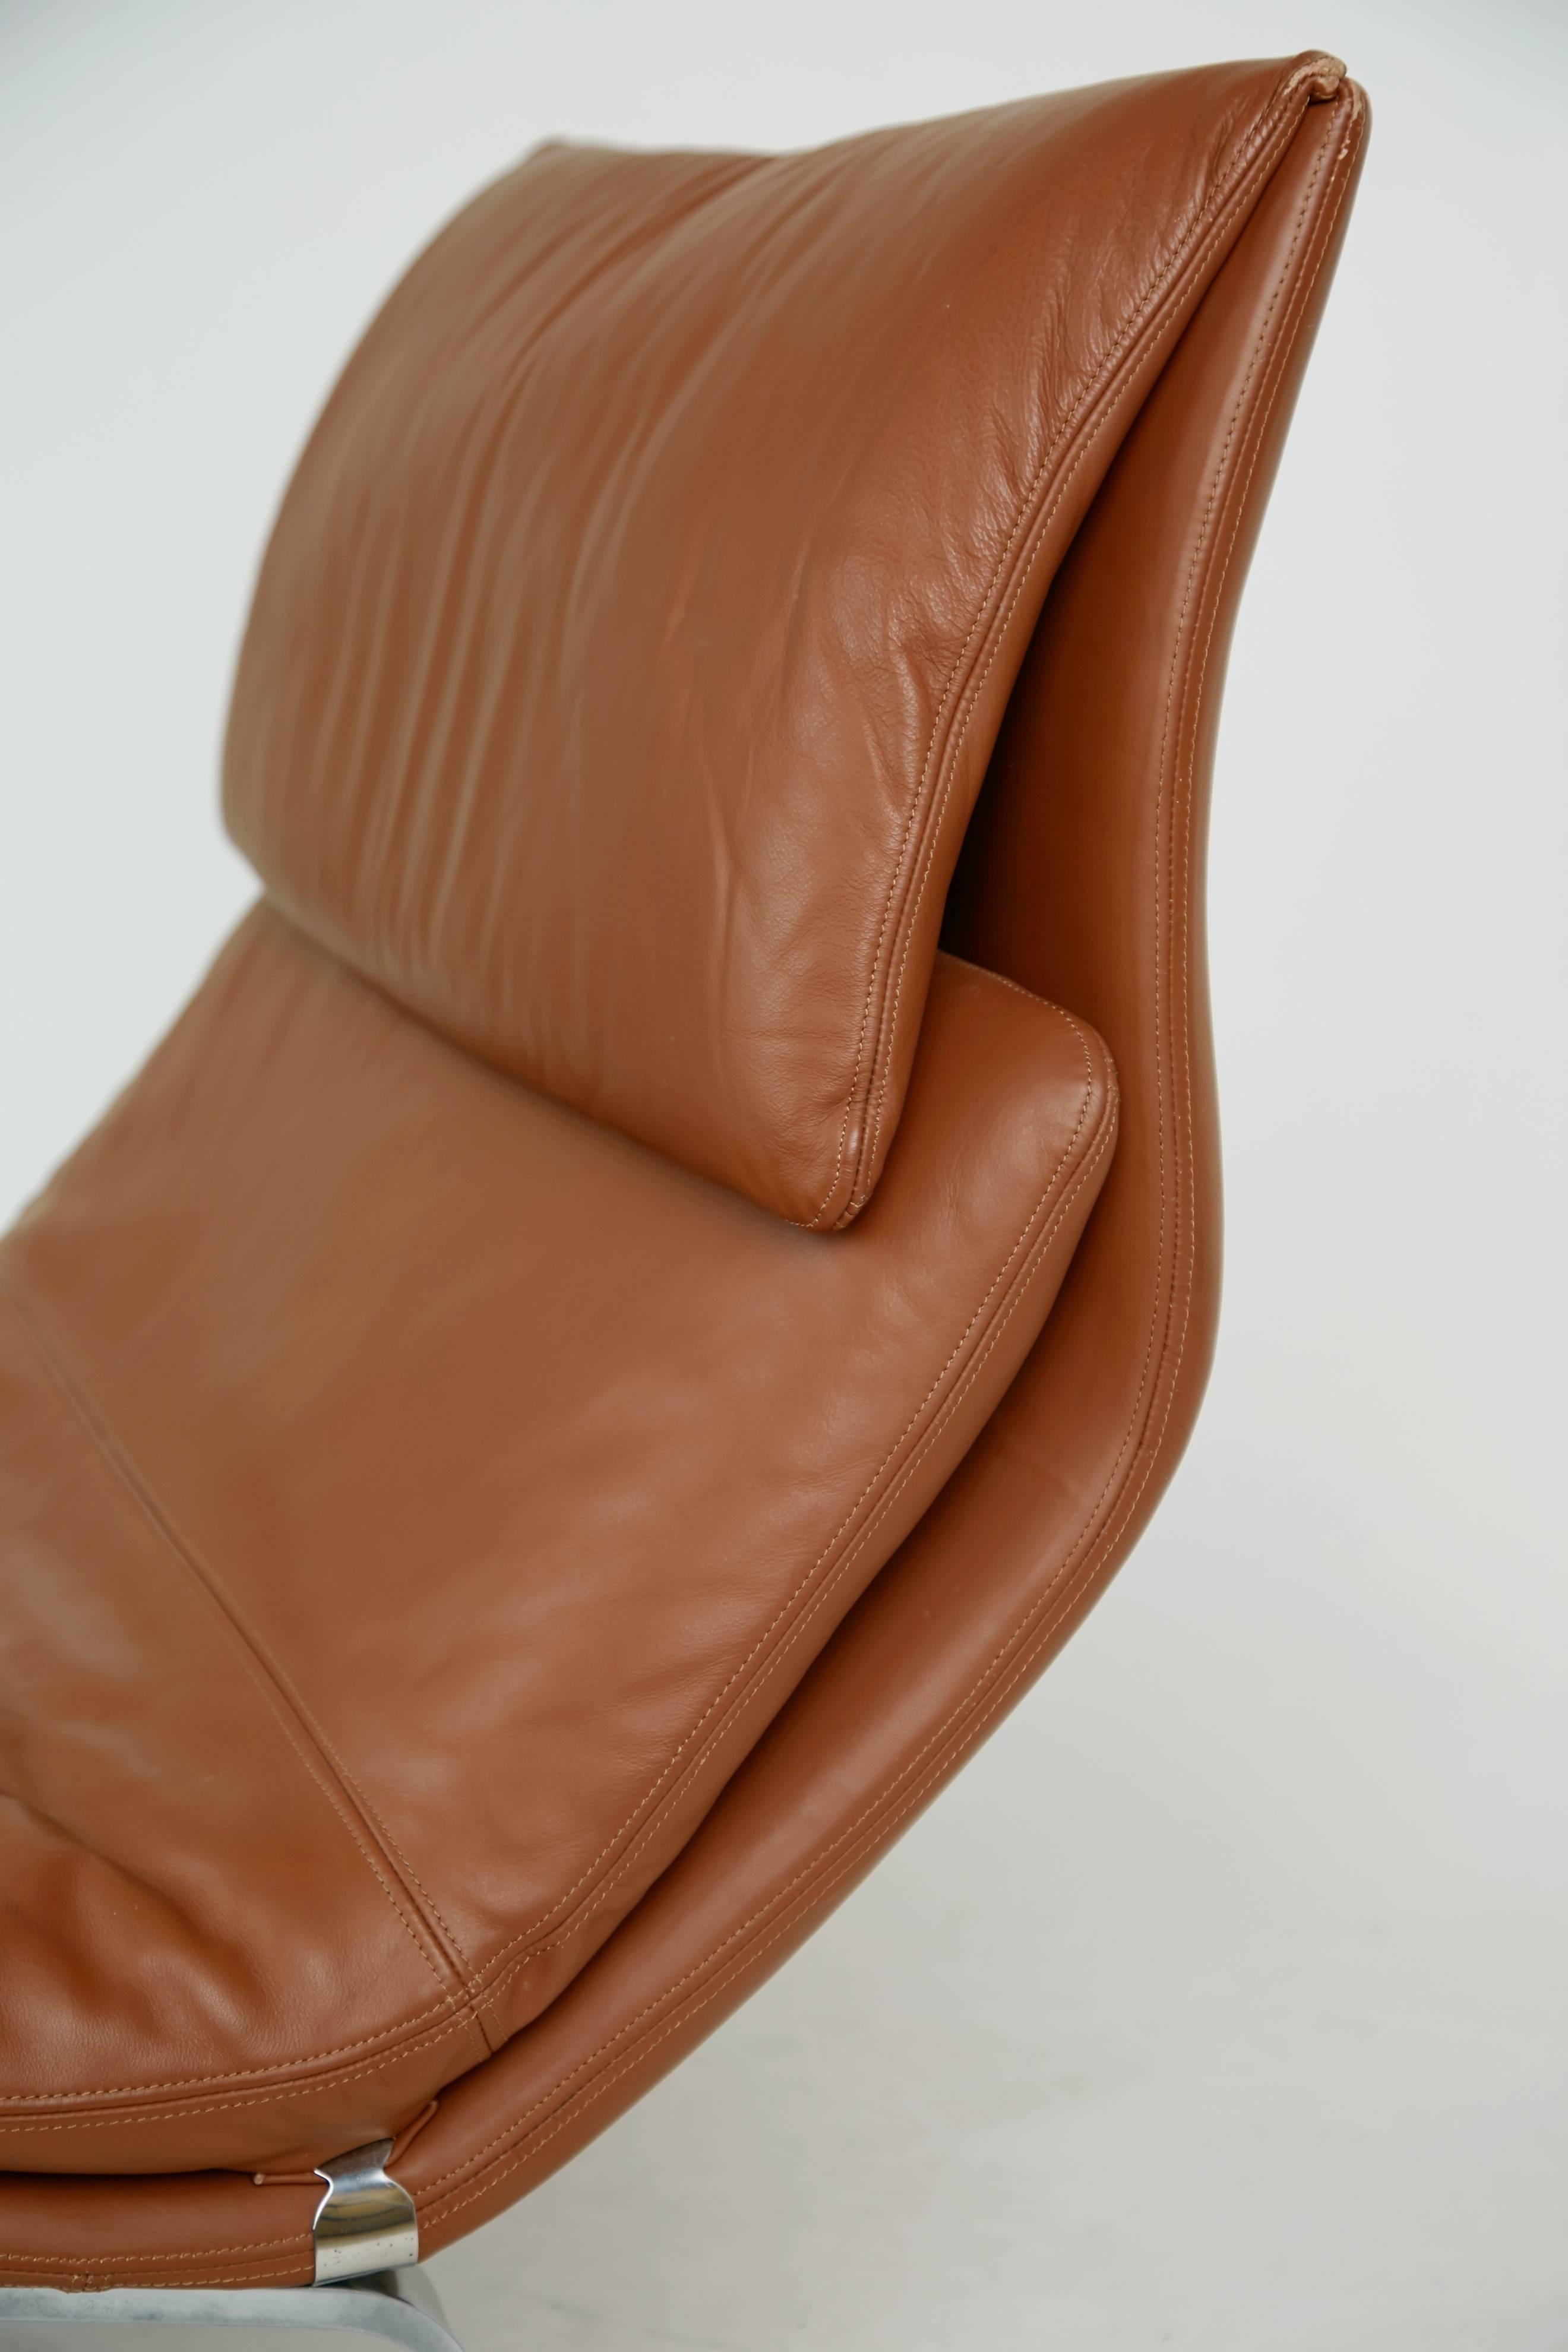 Onda Leather Lounge Chair by Giovanni Offredi for Saporiti Italia, circa 1970 1